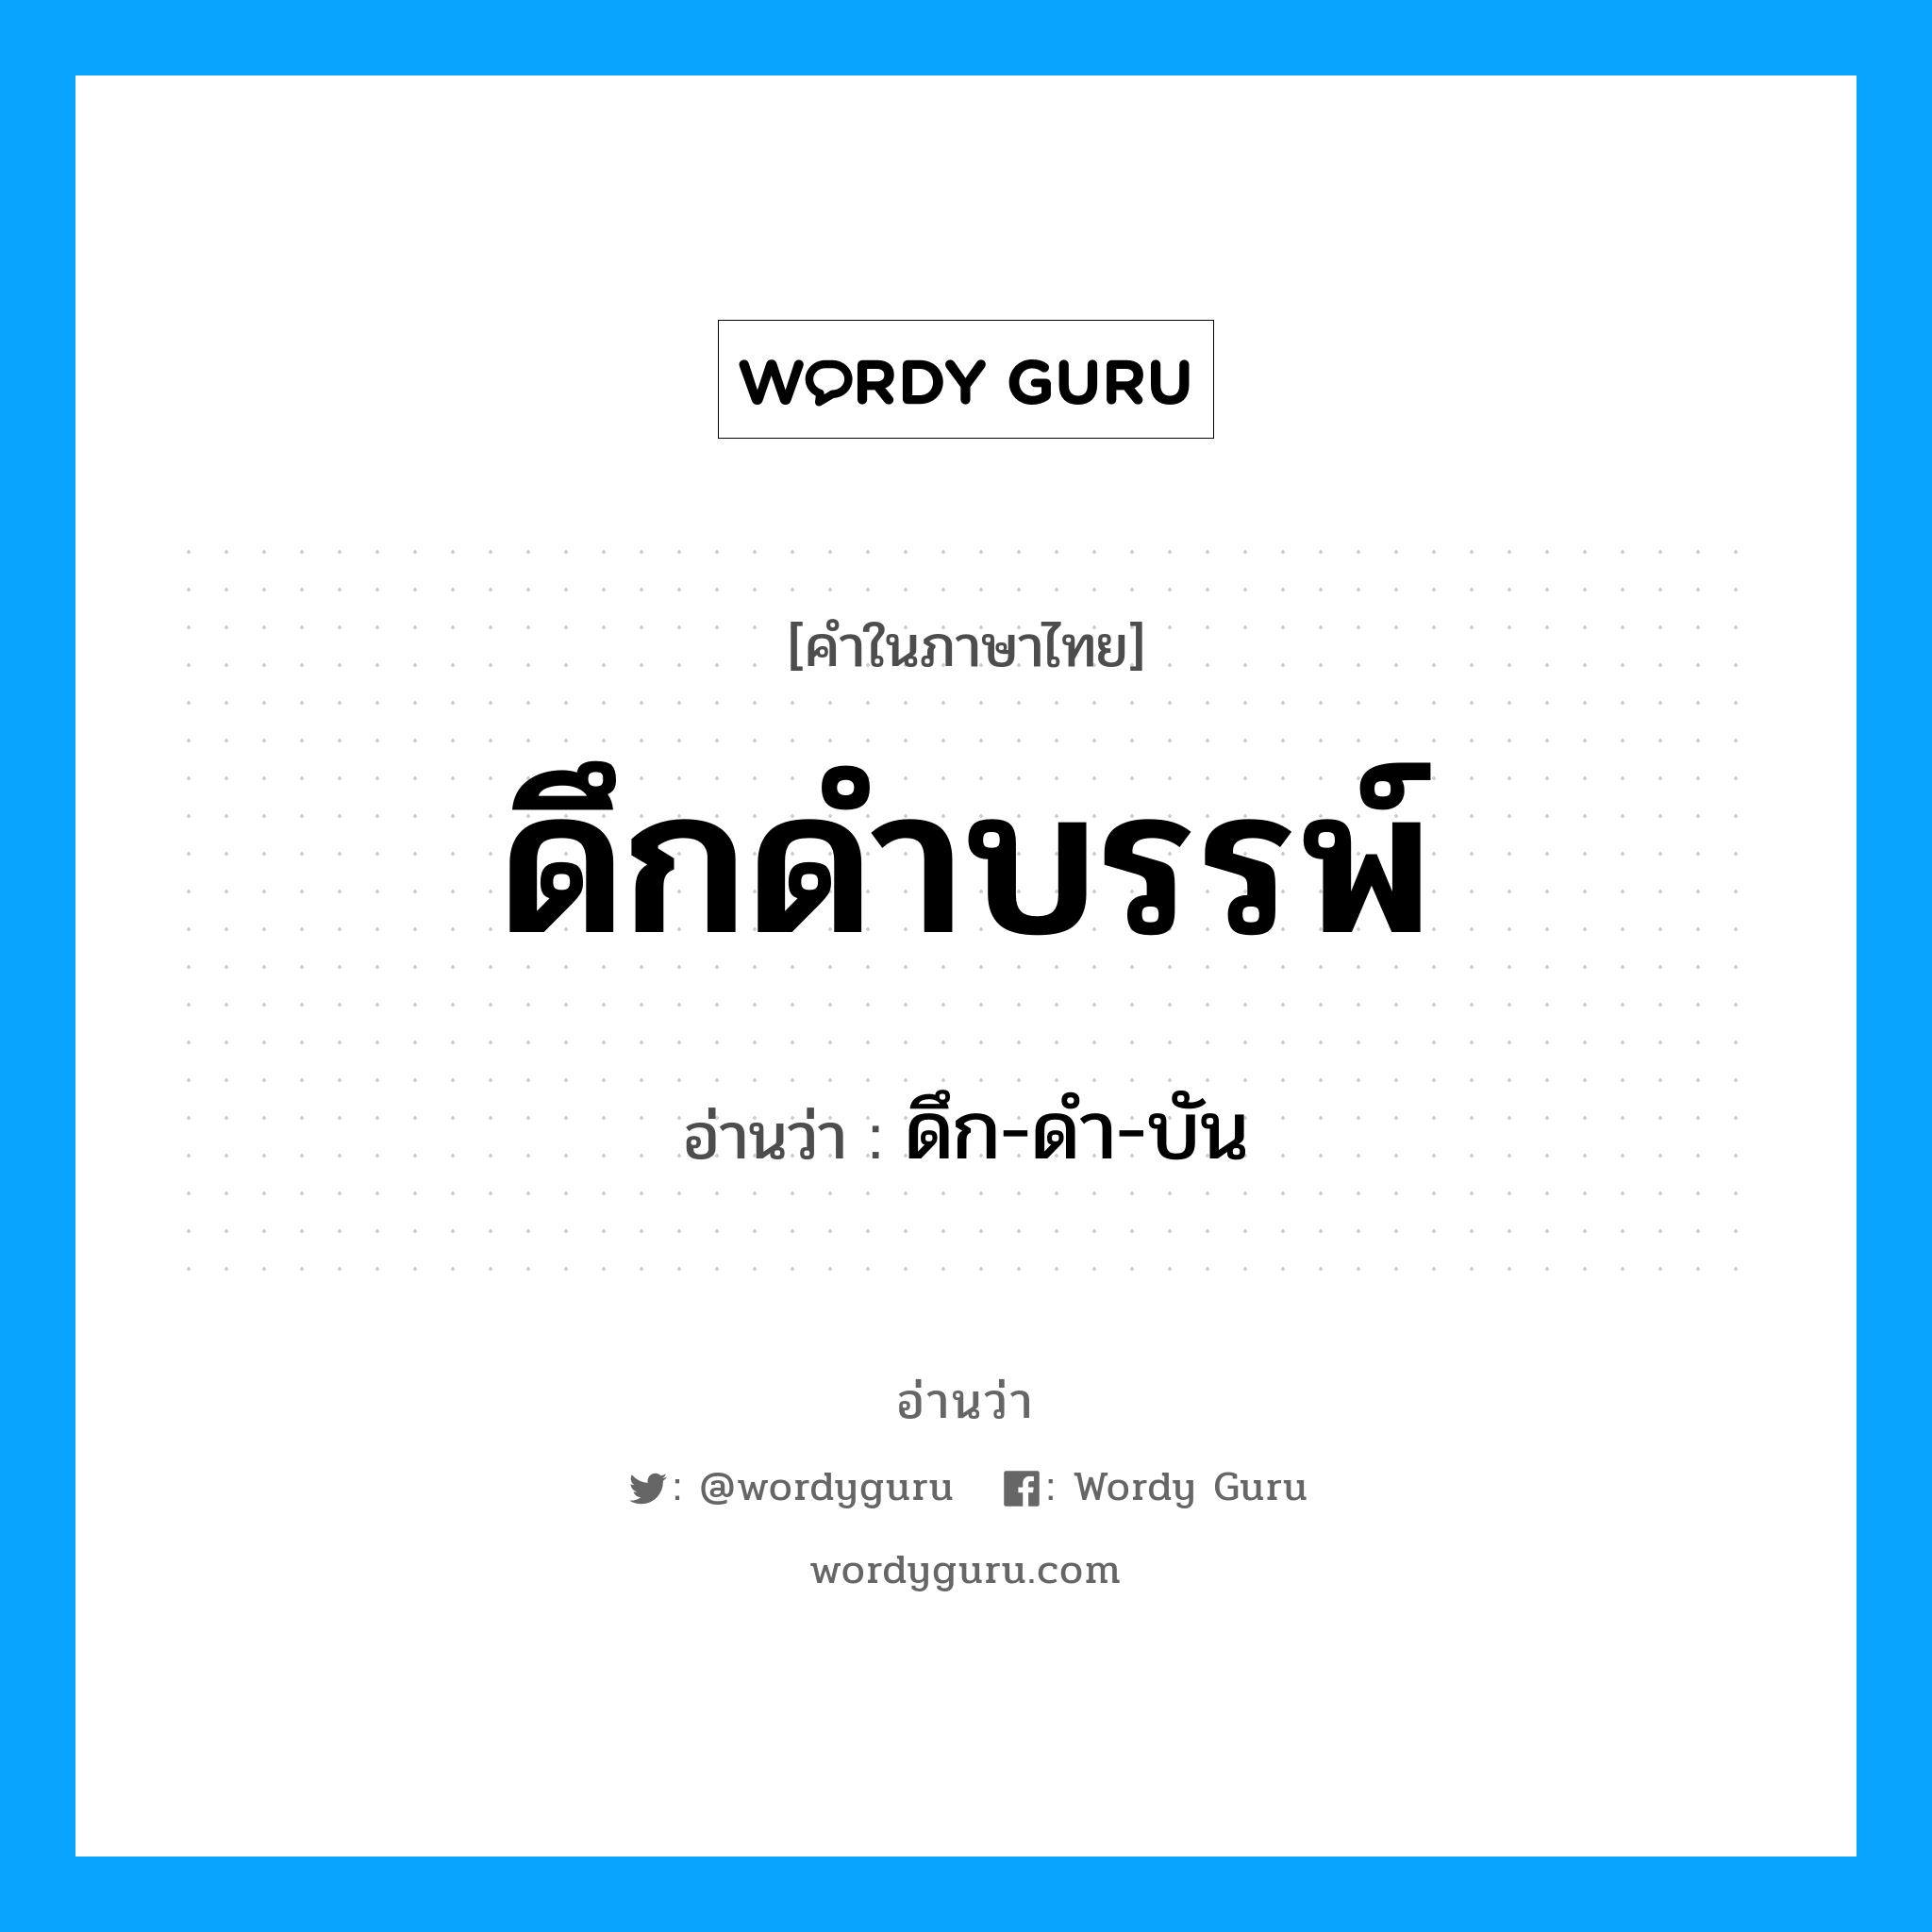 ดึก-ดำ-บัน เป็นคำอ่านของคำไหน?, คำในภาษาไทย ดึก-ดำ-บัน อ่านว่า ดึกดำบรรพ์